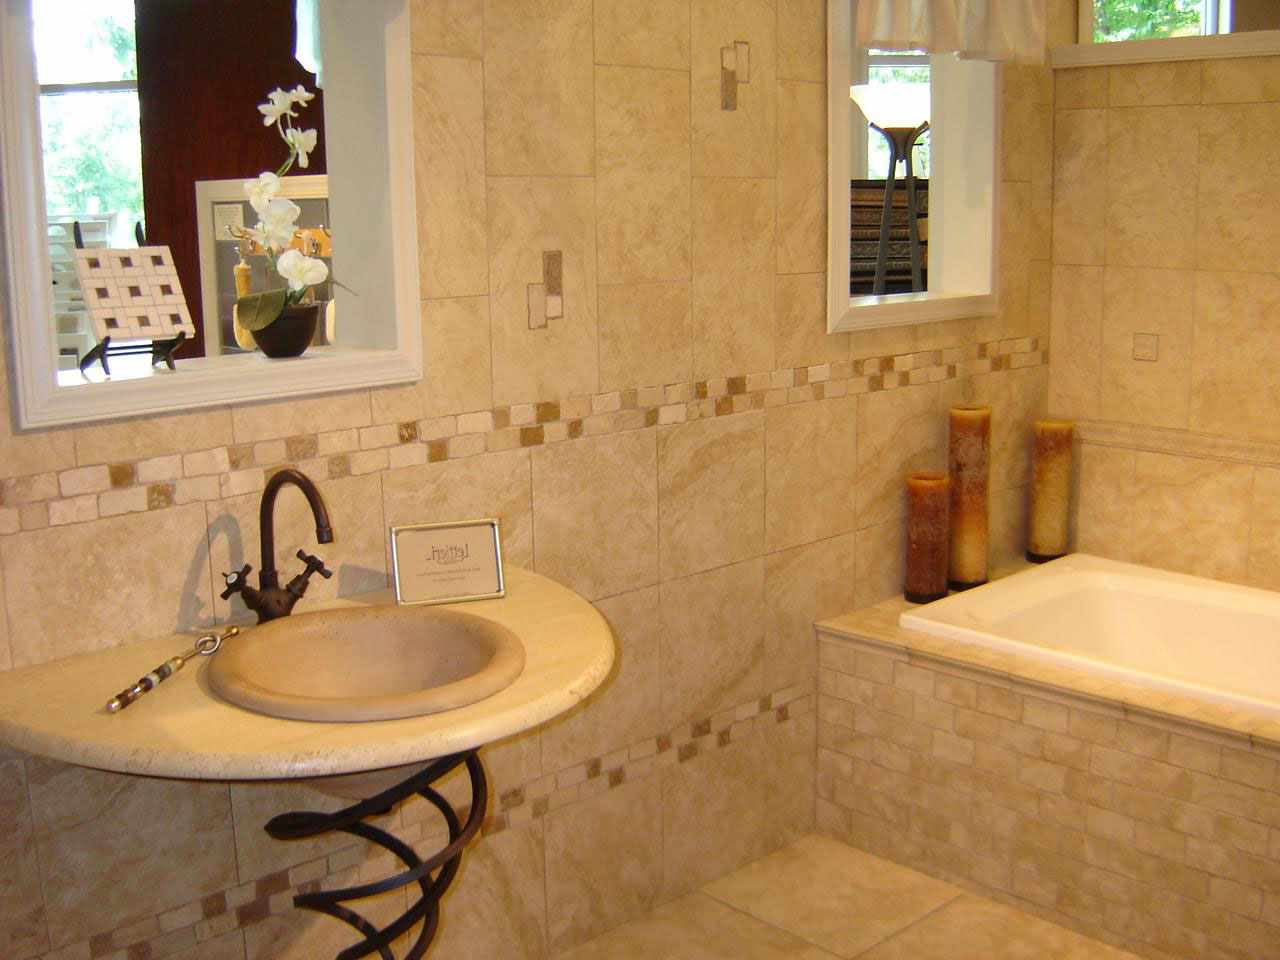 Un exemple d'une belle salle de bain carrelée